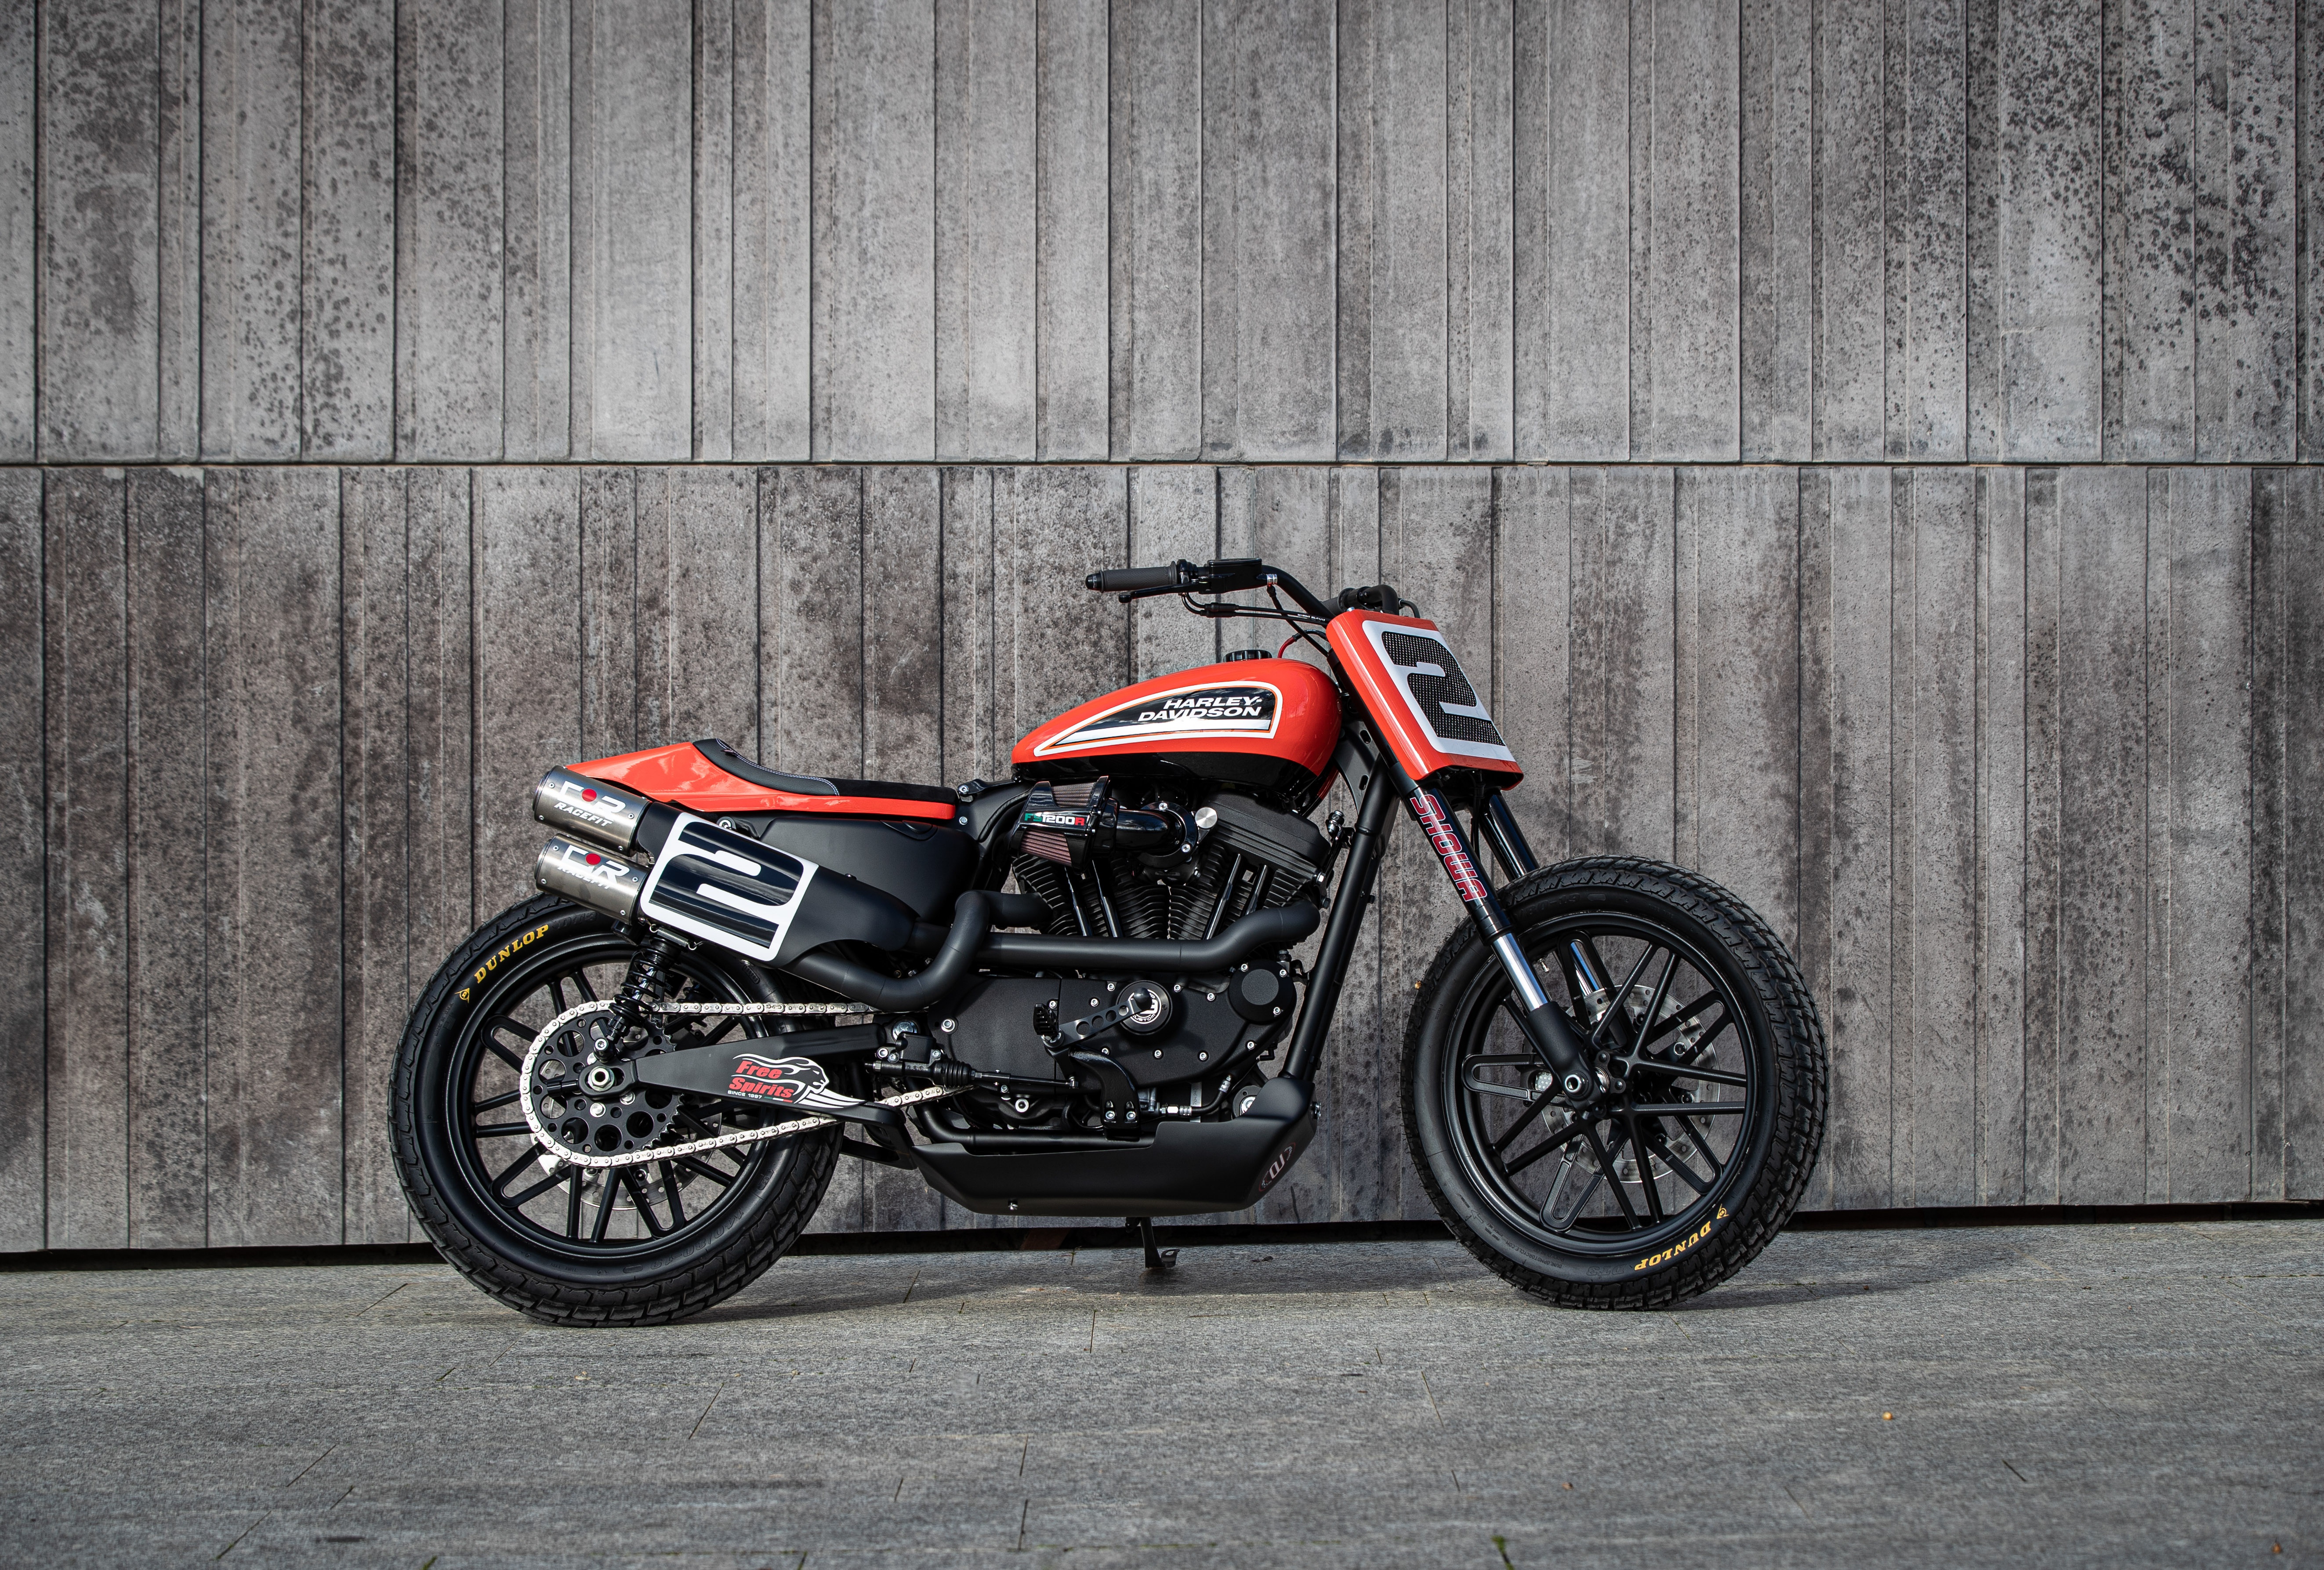 Ngam dan xe Harley-Davidson Sportster lot xac voi ban do Sykes hinh anh 1 2020_Harley_Davidson_Sportster_Custom_5231.jpg